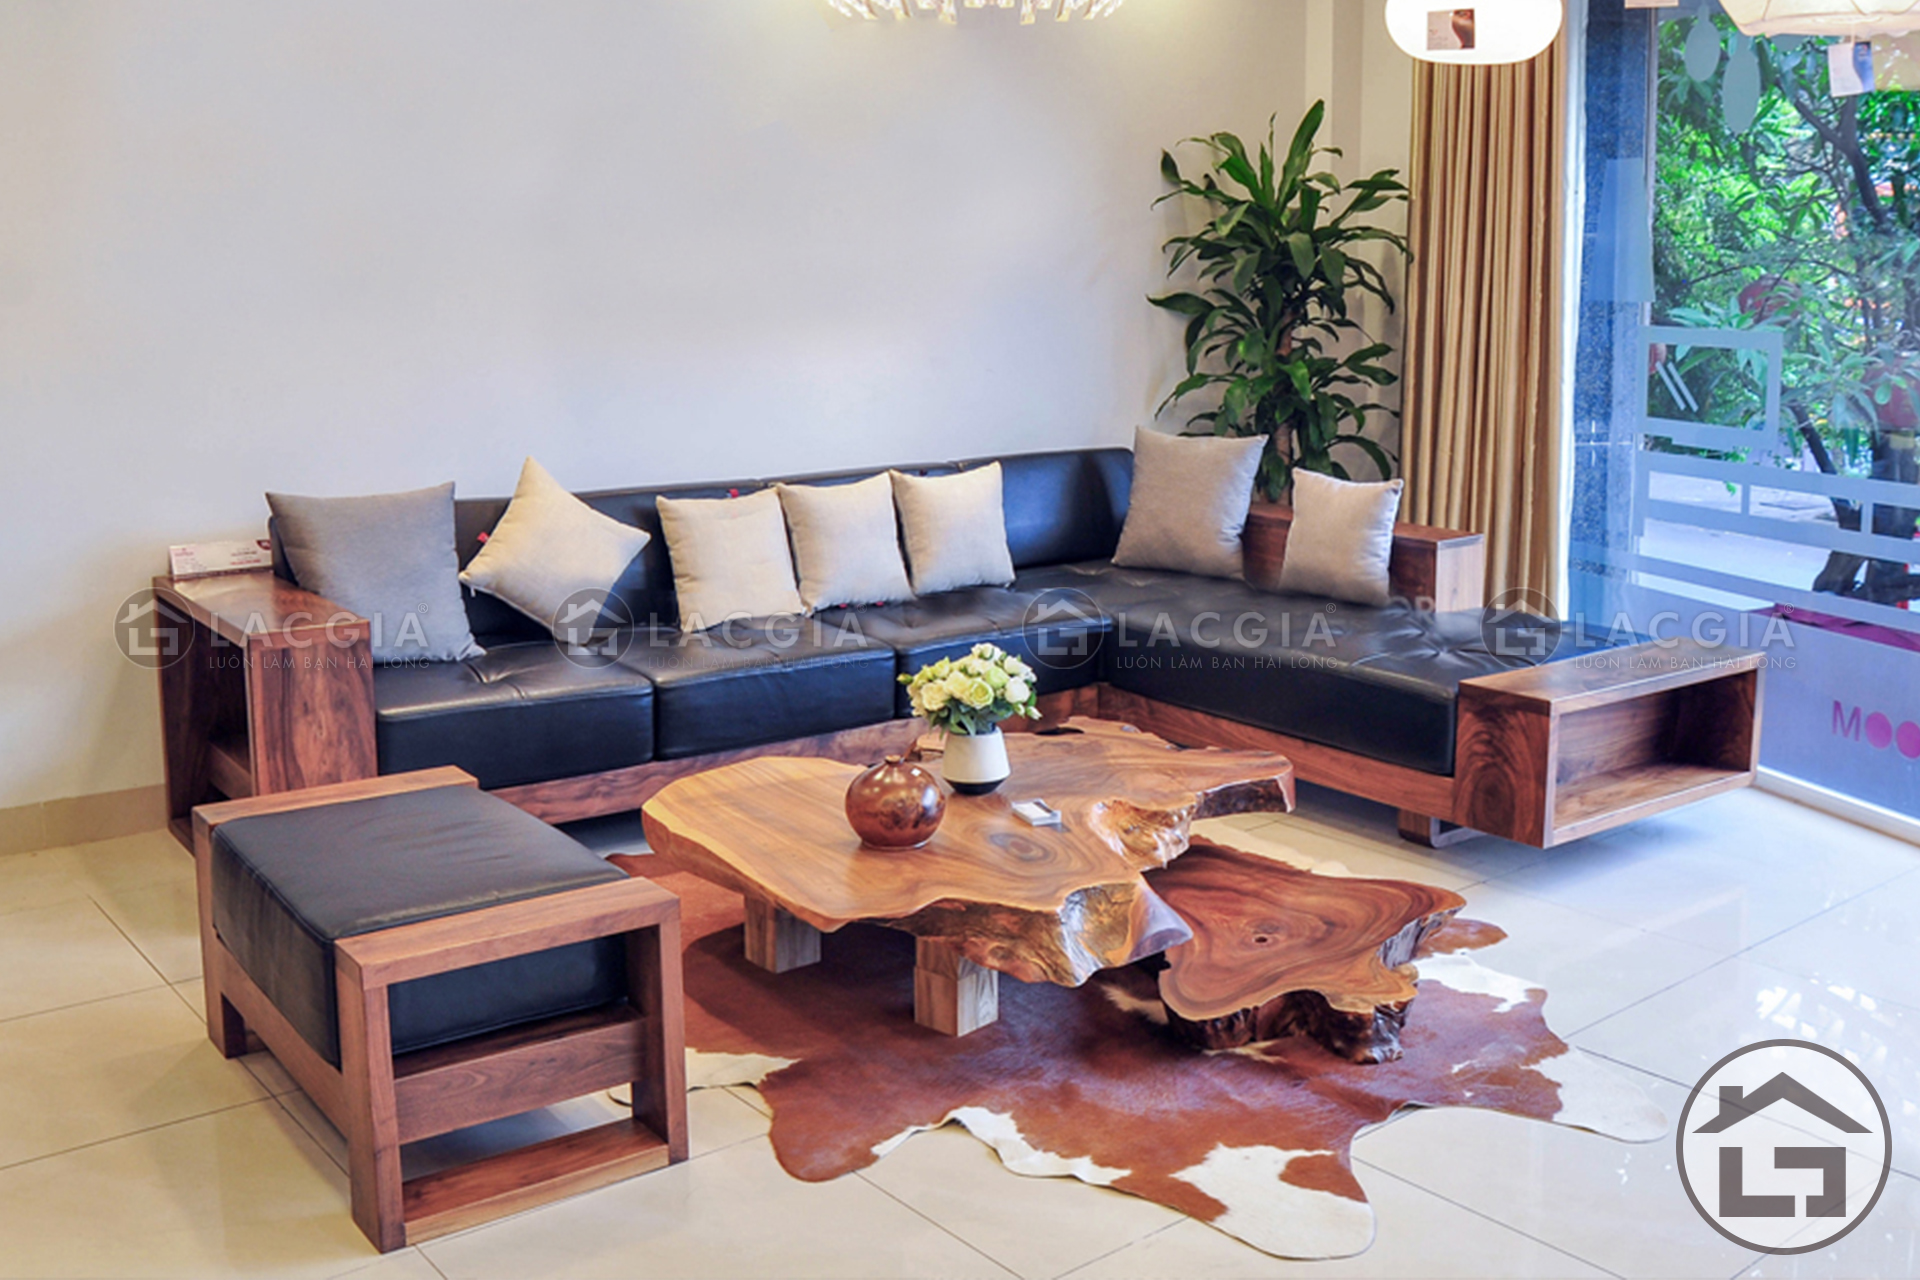 Sofa go chu L hien dai 1 - Ưu điểm đặc biệt của cho sofa gỗ góc mang lại cho phòng khách